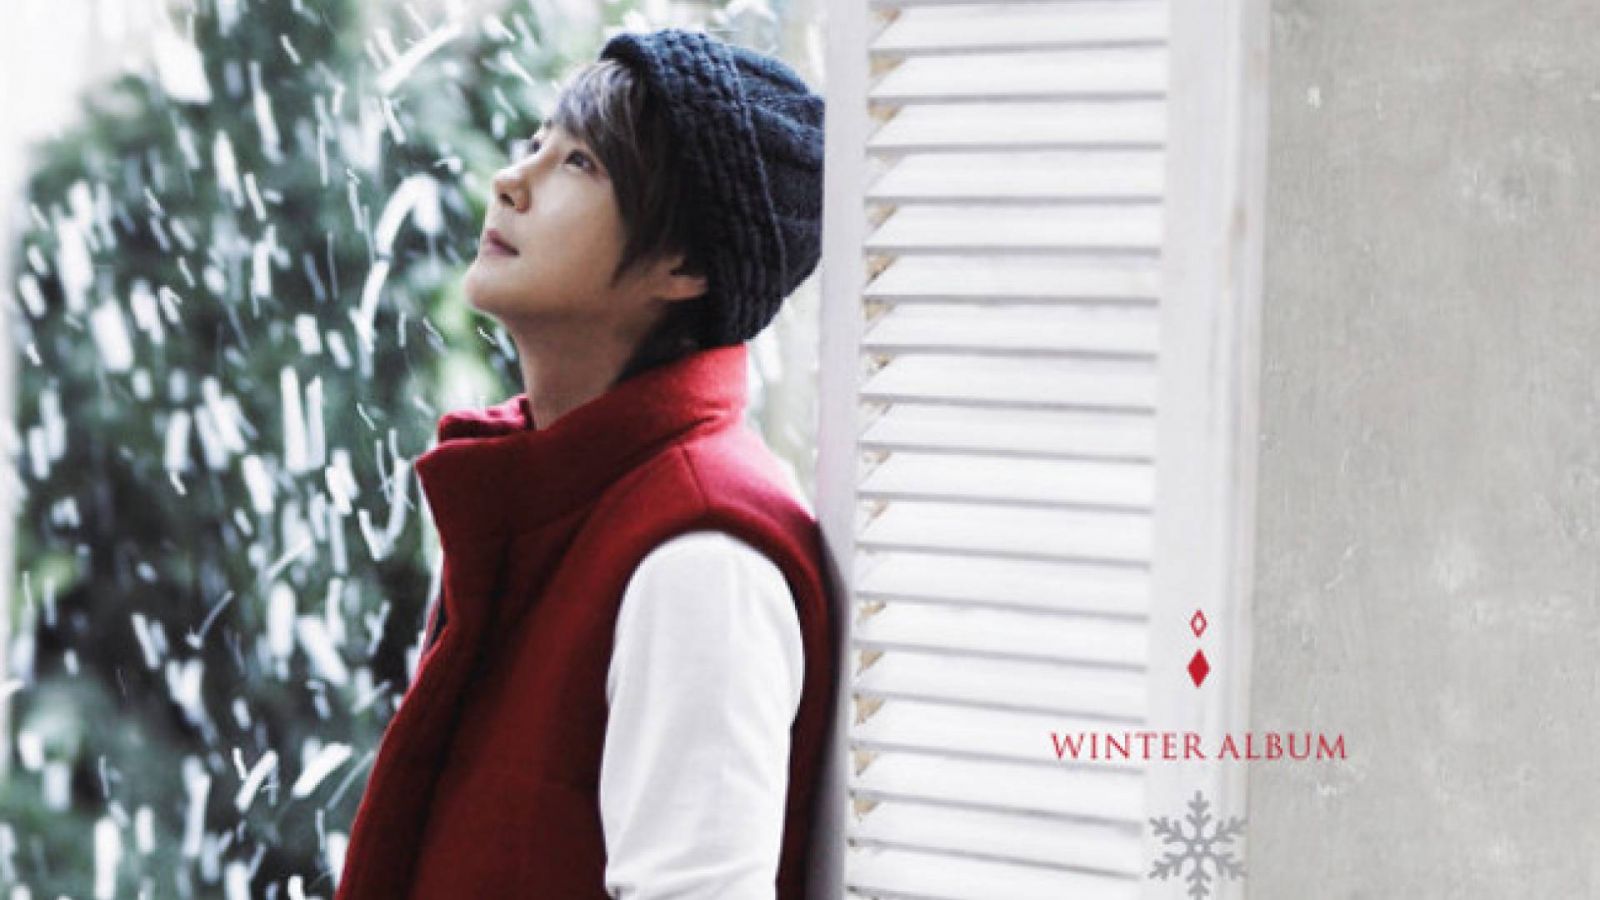 Detalhes do álbum de inverno de Shin Hyesung © Shin Hyesung